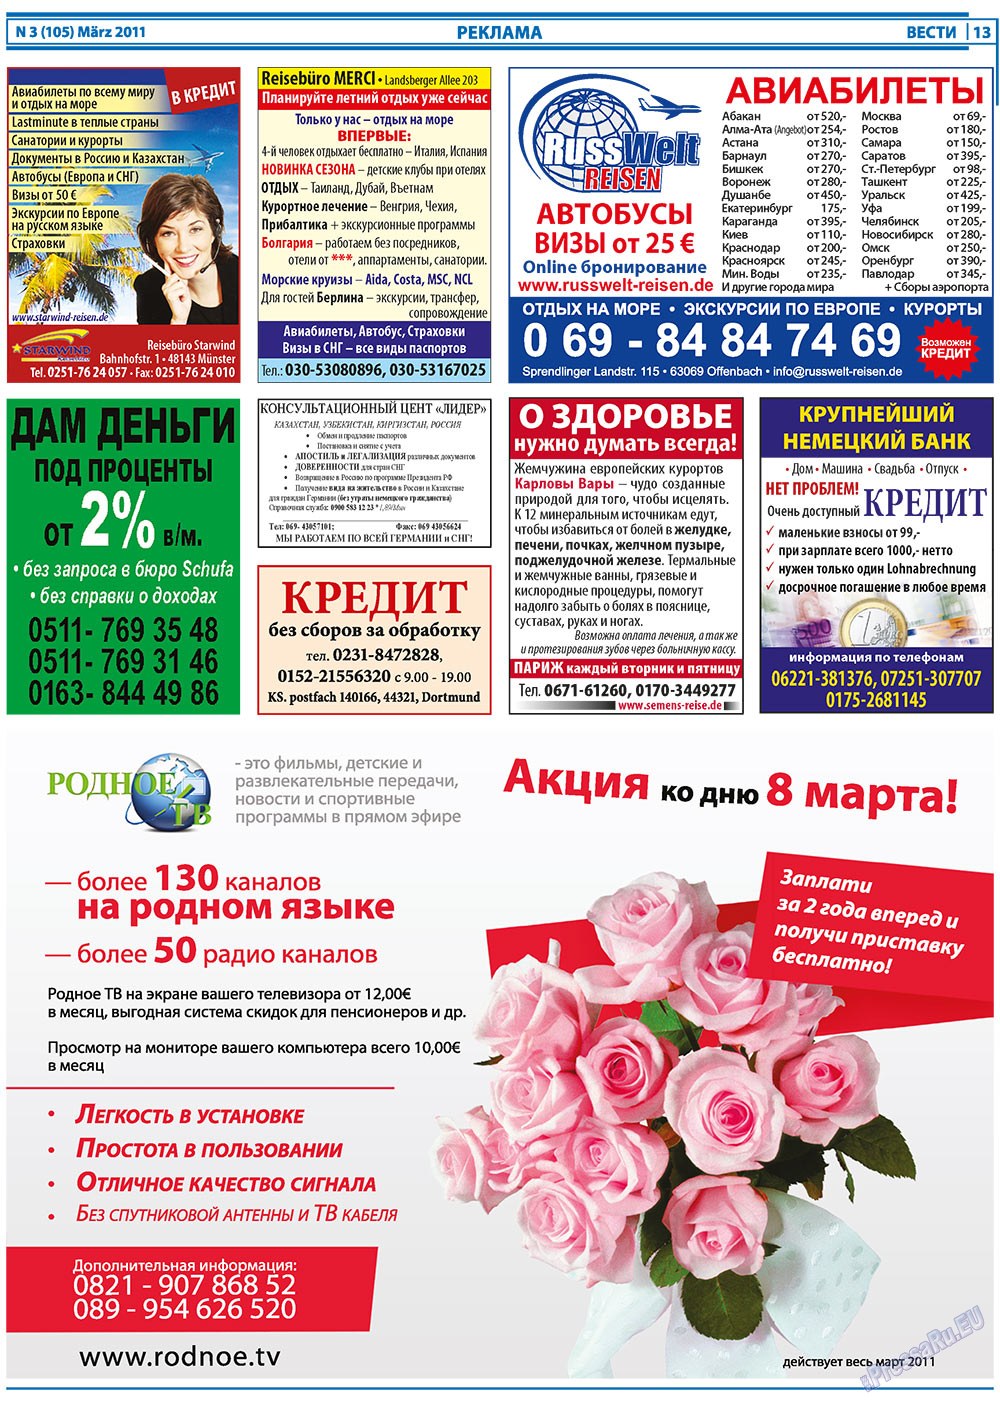 Вести, газета. 2011 №3 стр.13